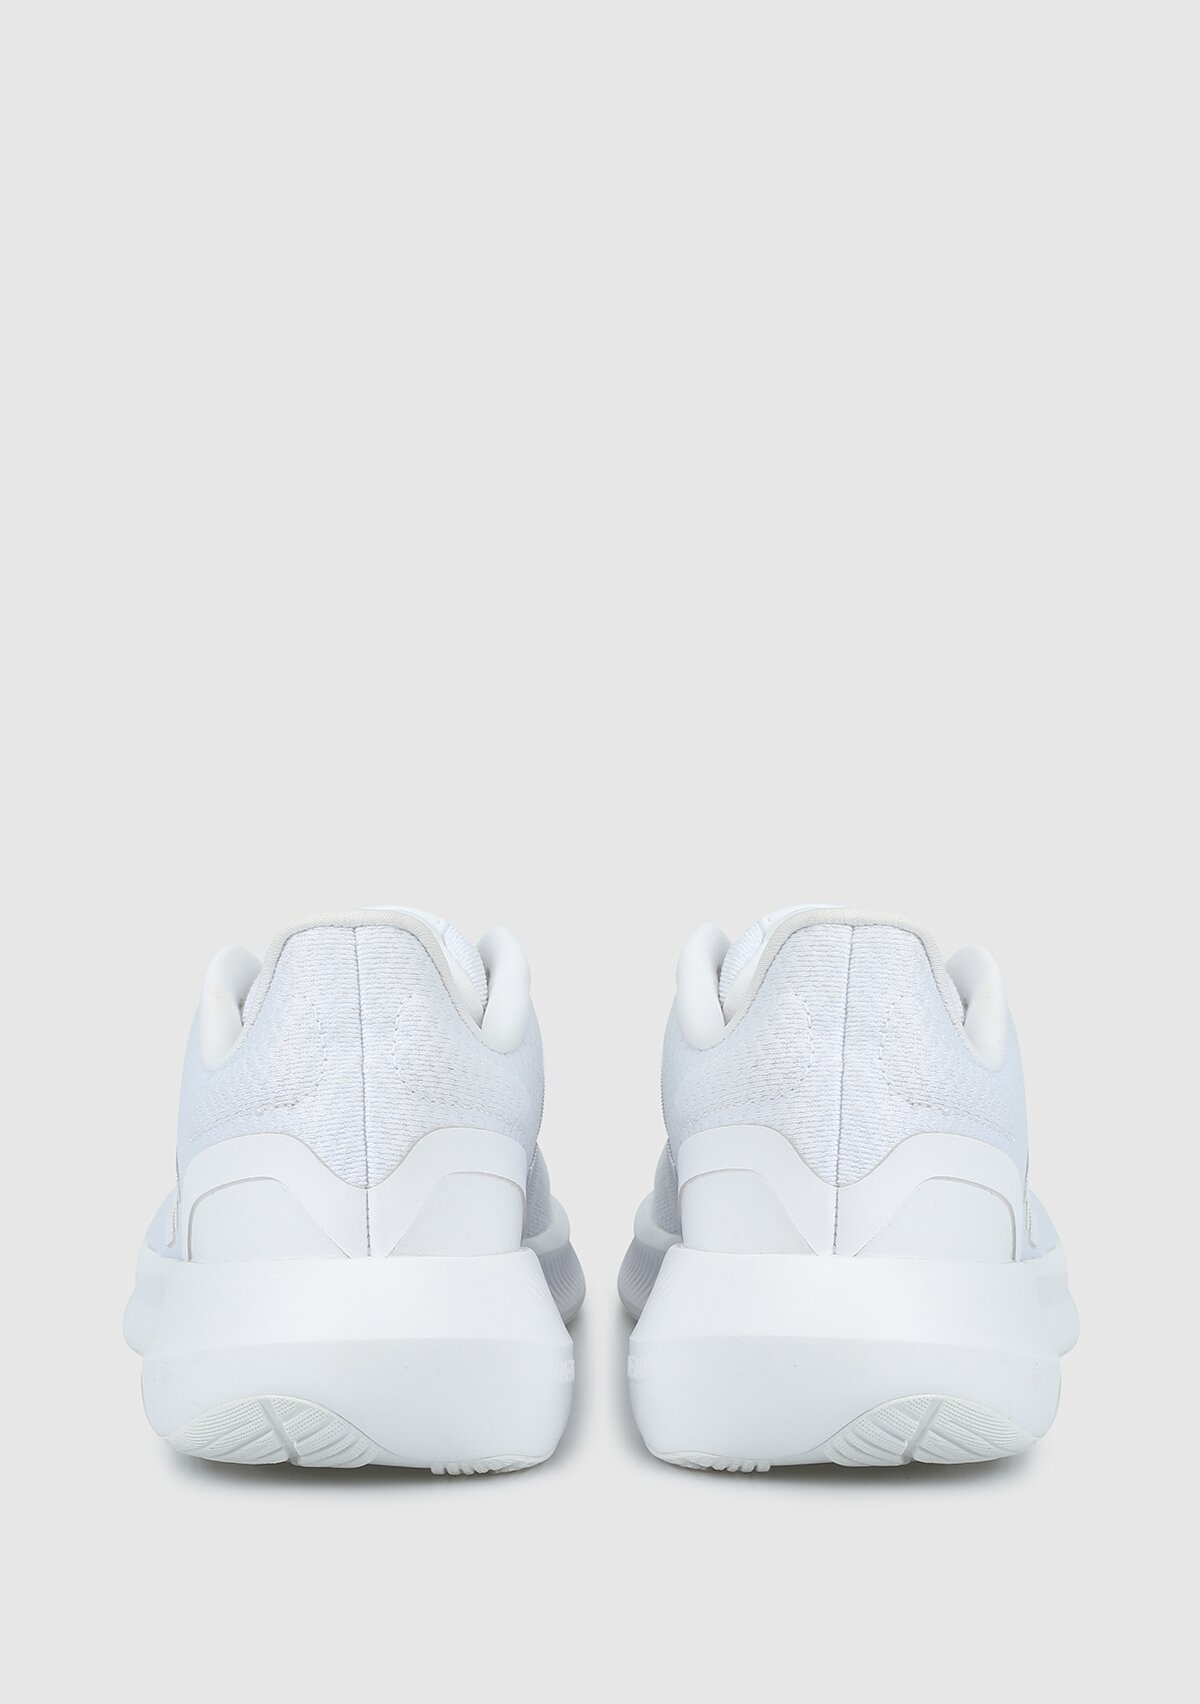 adidas Runfalcon 3.0 W beyaz kadın koşu Ayakkabısı hp7559